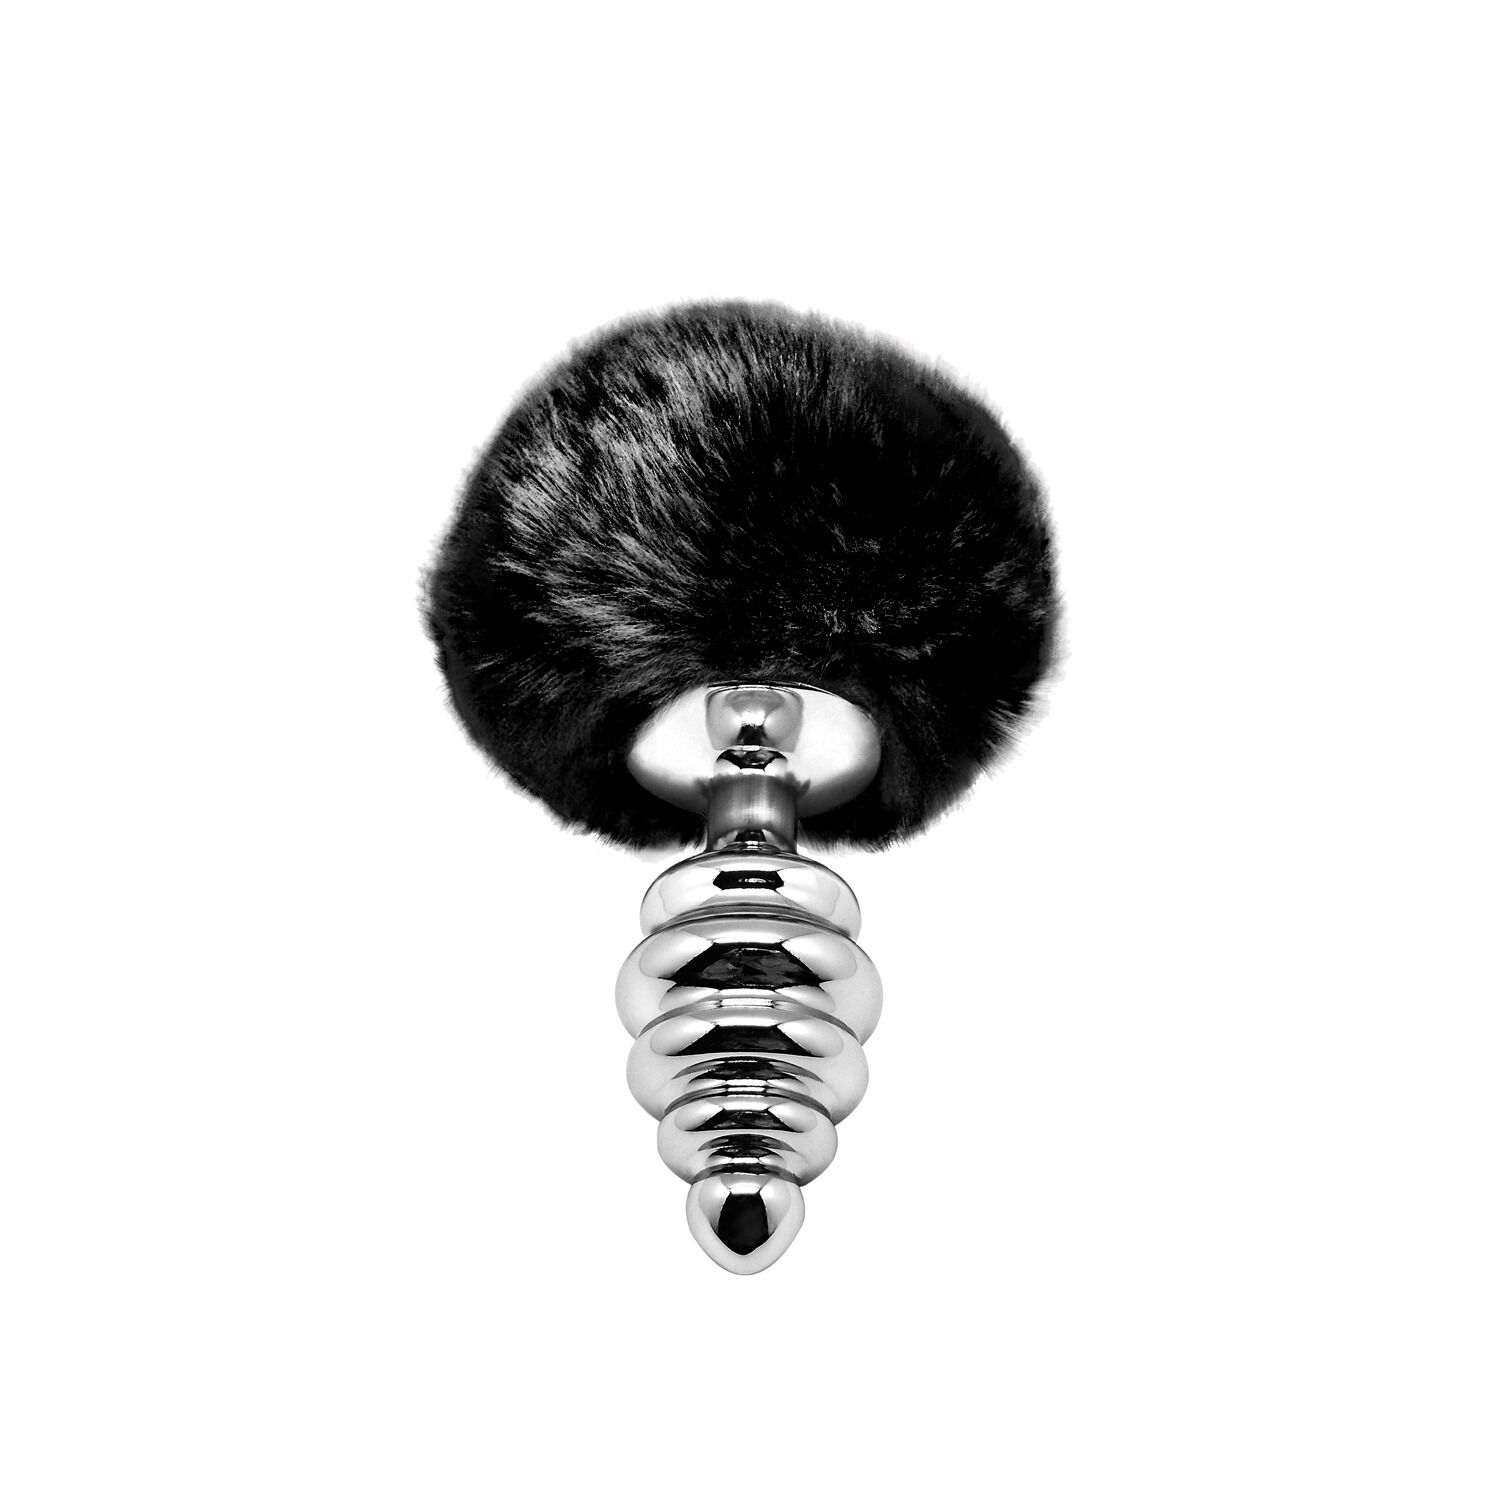 Металлическая анальная пробка Кроличий хв�остик Alive Fluffy Twist Plug M Black, диаметр 3,4 см